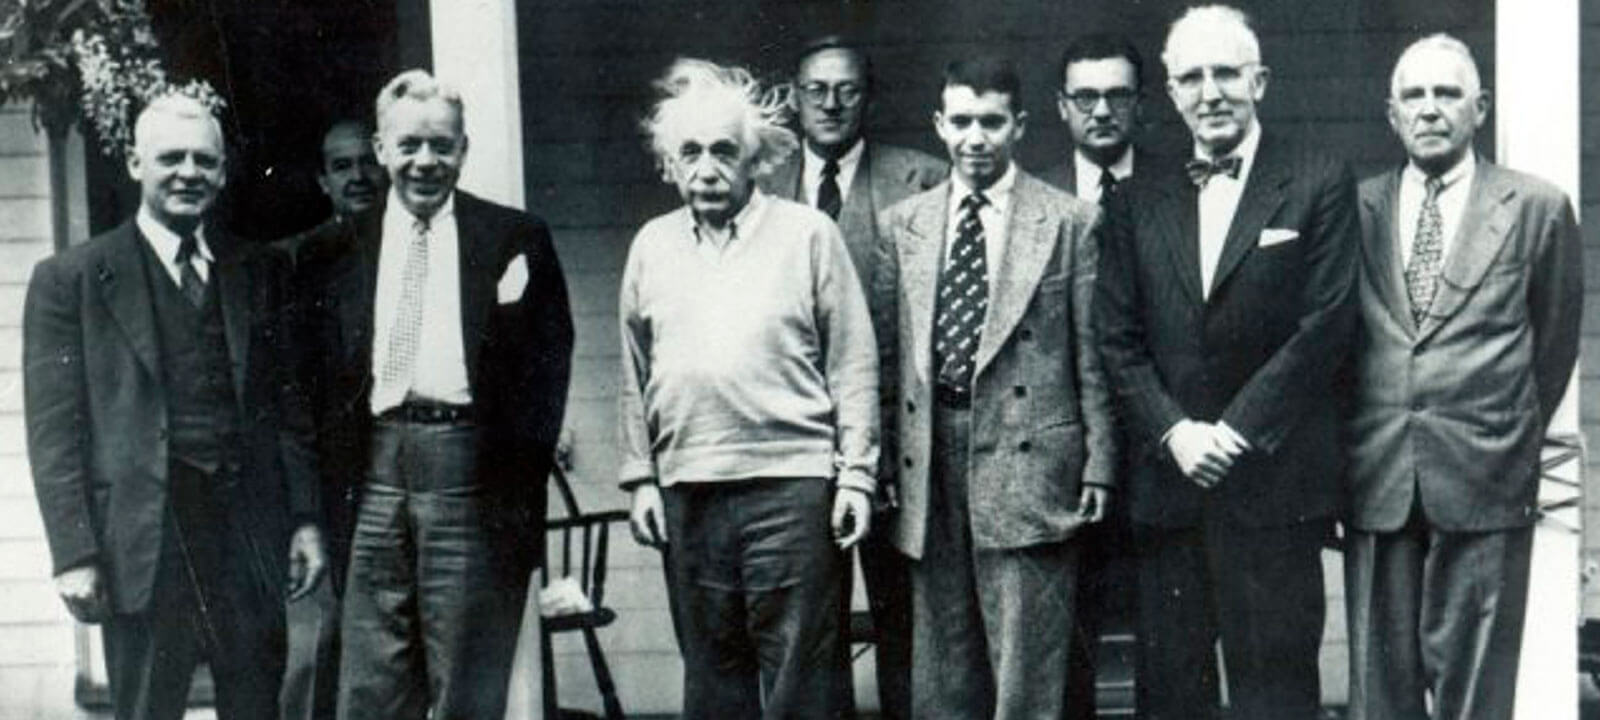 El joven Mario Laserna, fundador distinguido, al lado de Albert Einstein y demás miembros de la Junta Consultiva de la Universidad de los Andes.